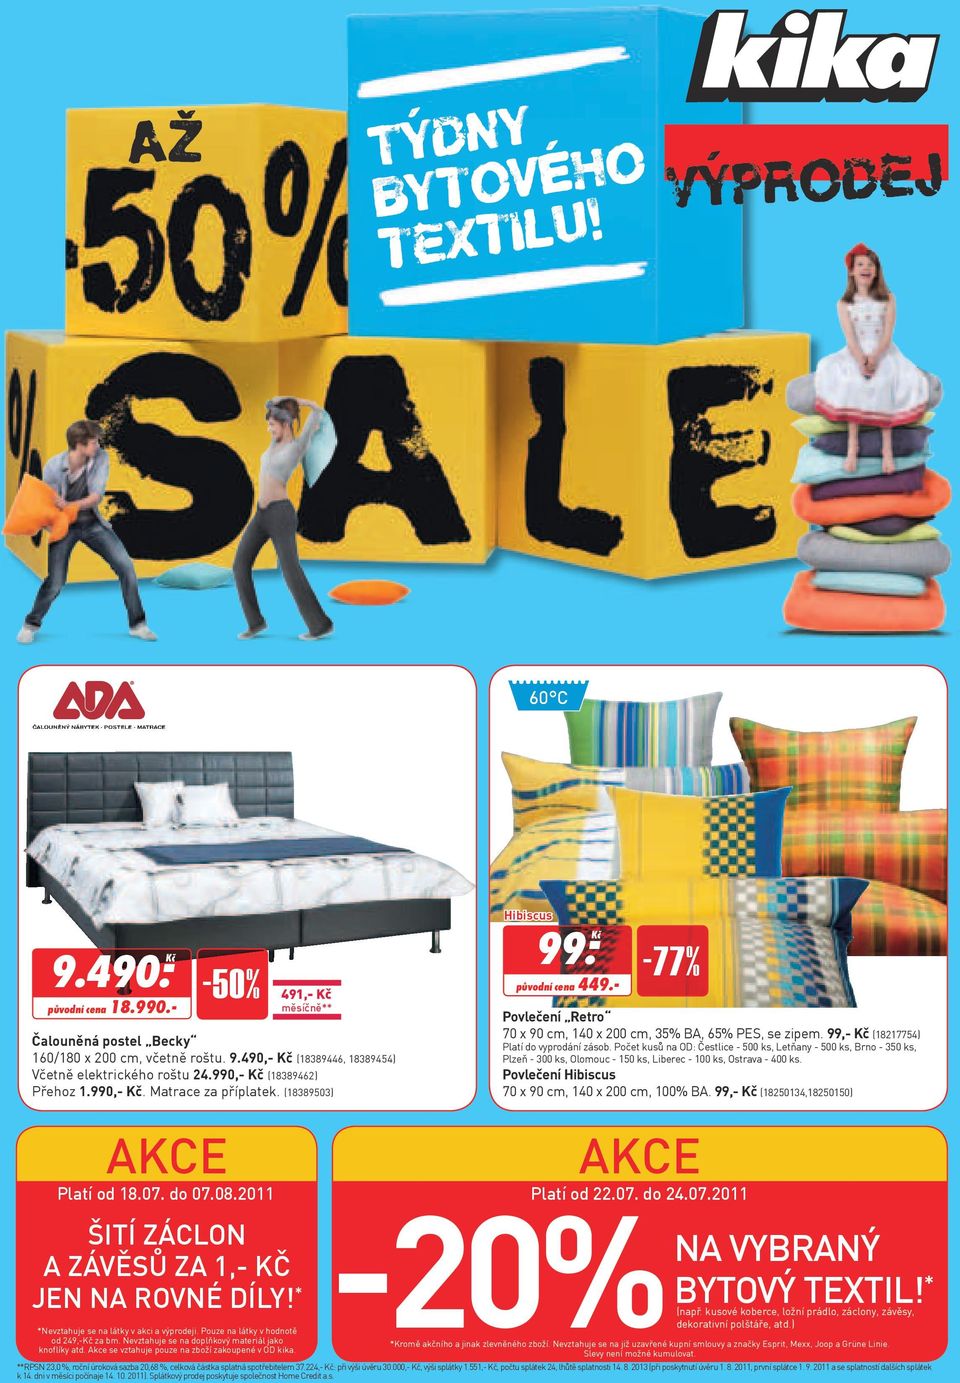 20% Výprodej. Týdny bytového textilu! -77% -50% Na vybraný bytový textil! *  A ZÁVěSŮ ZA 1,- Kč. Platí od do - PDF Free Download